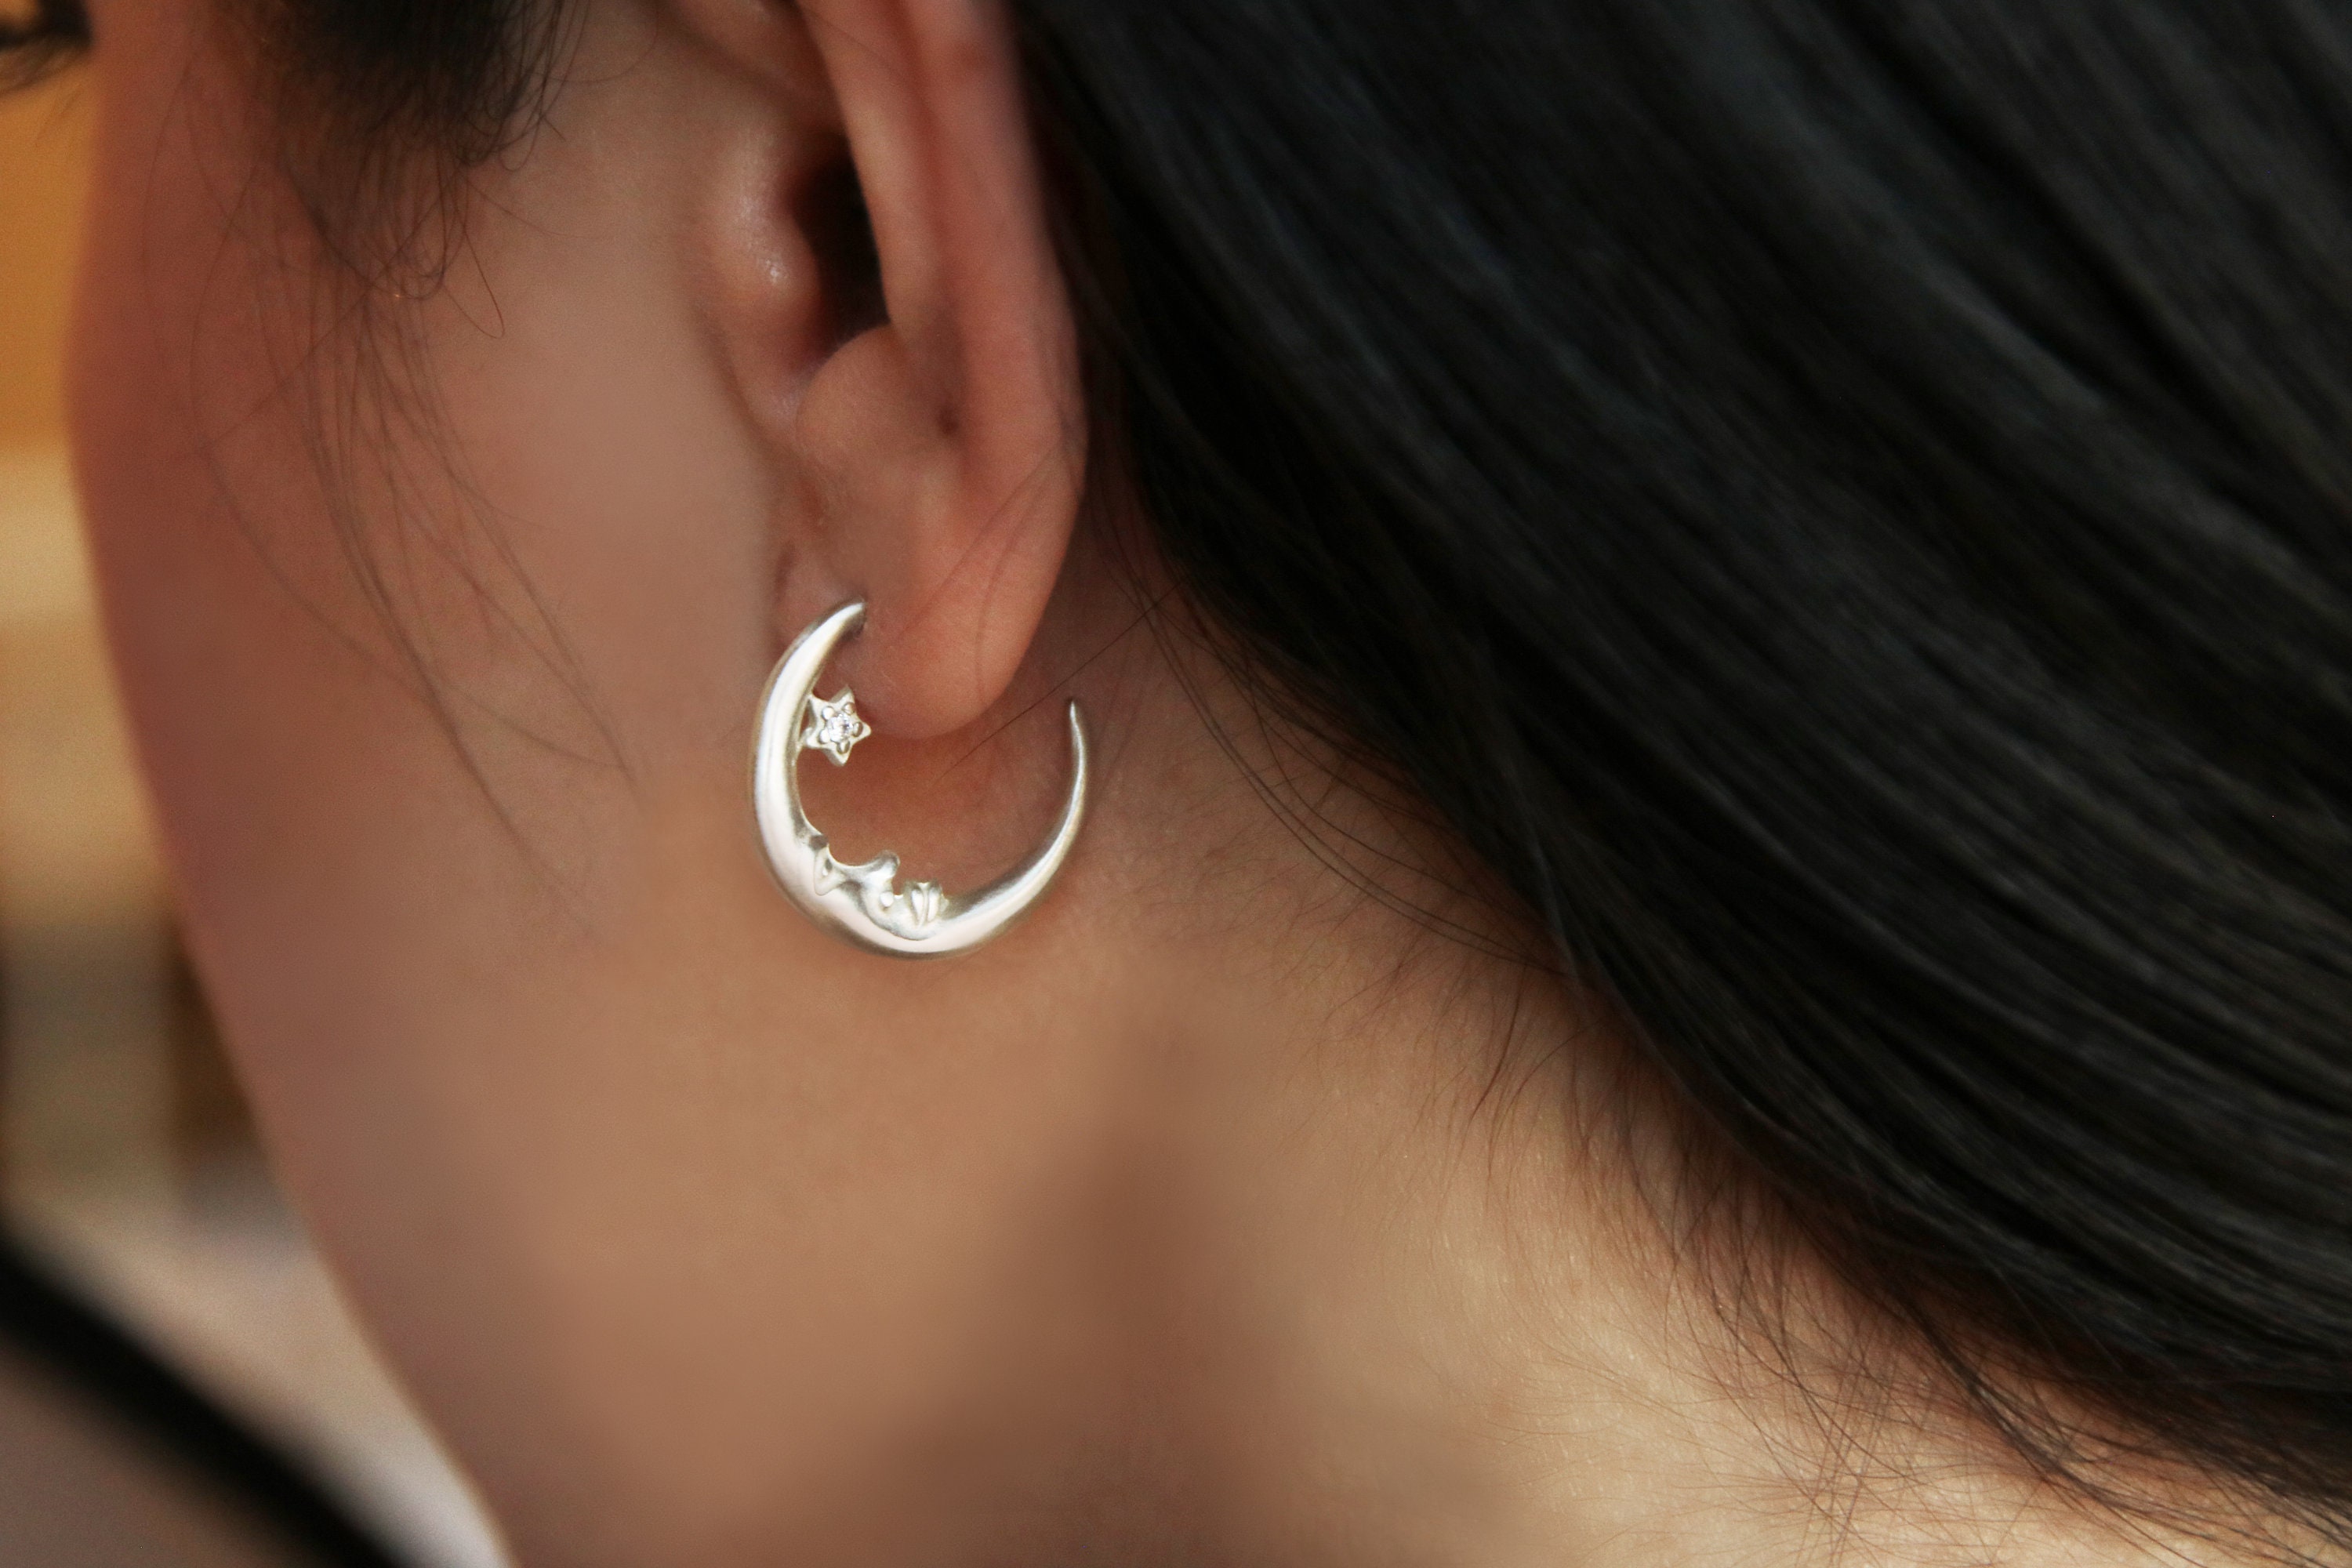 Crescent Cz Moon Earrings, Delicate Sterling Silver Half Moon Celestial Earrings